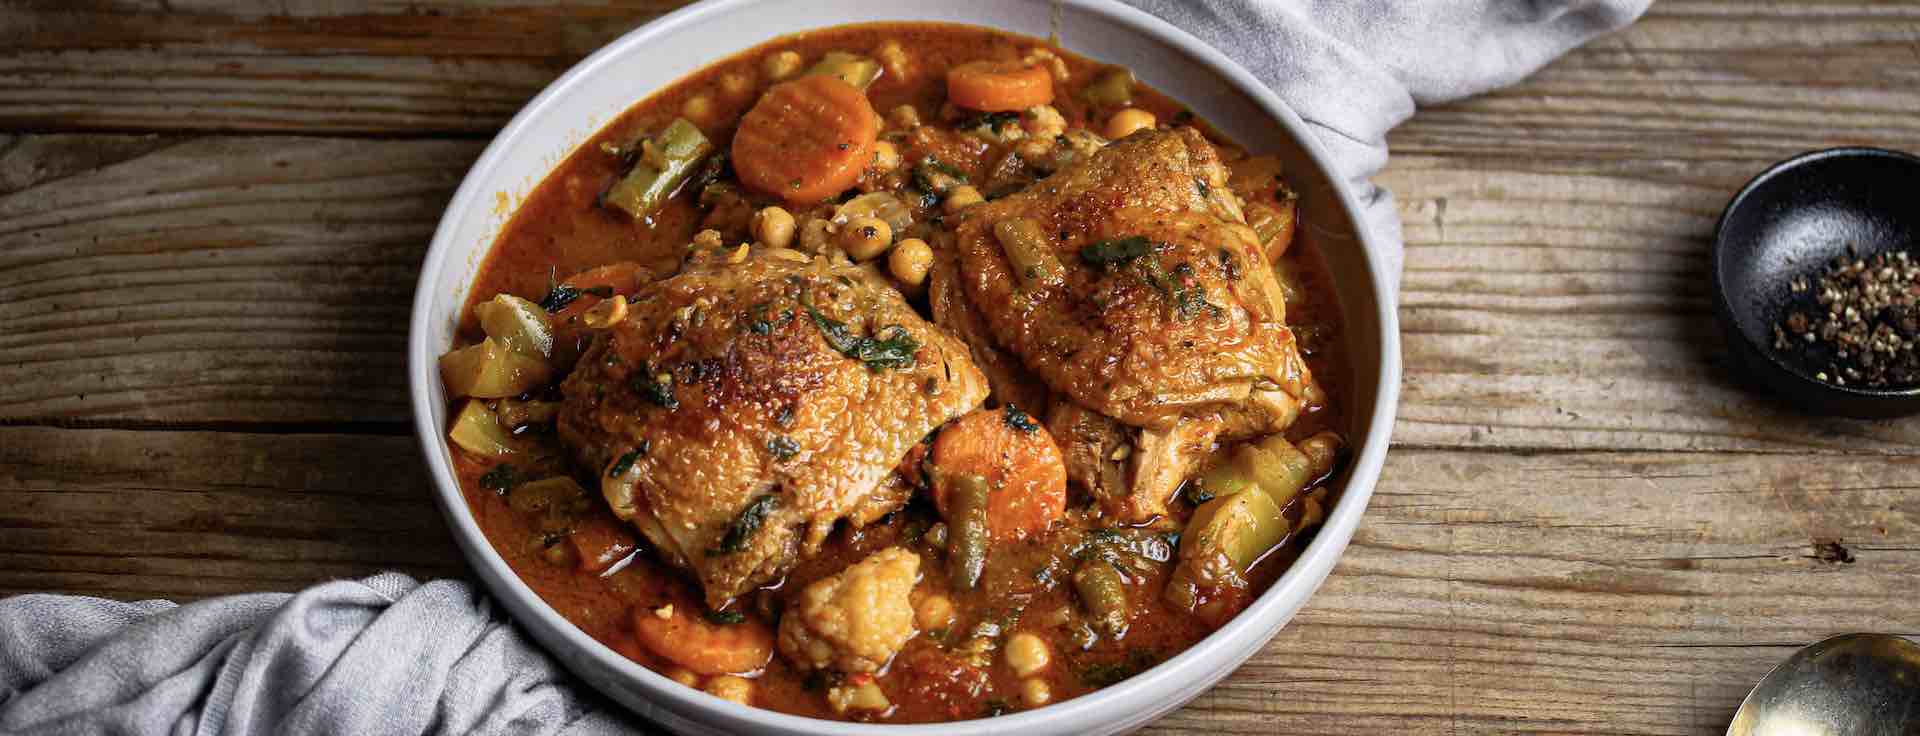 African Chicken & Veg Stew